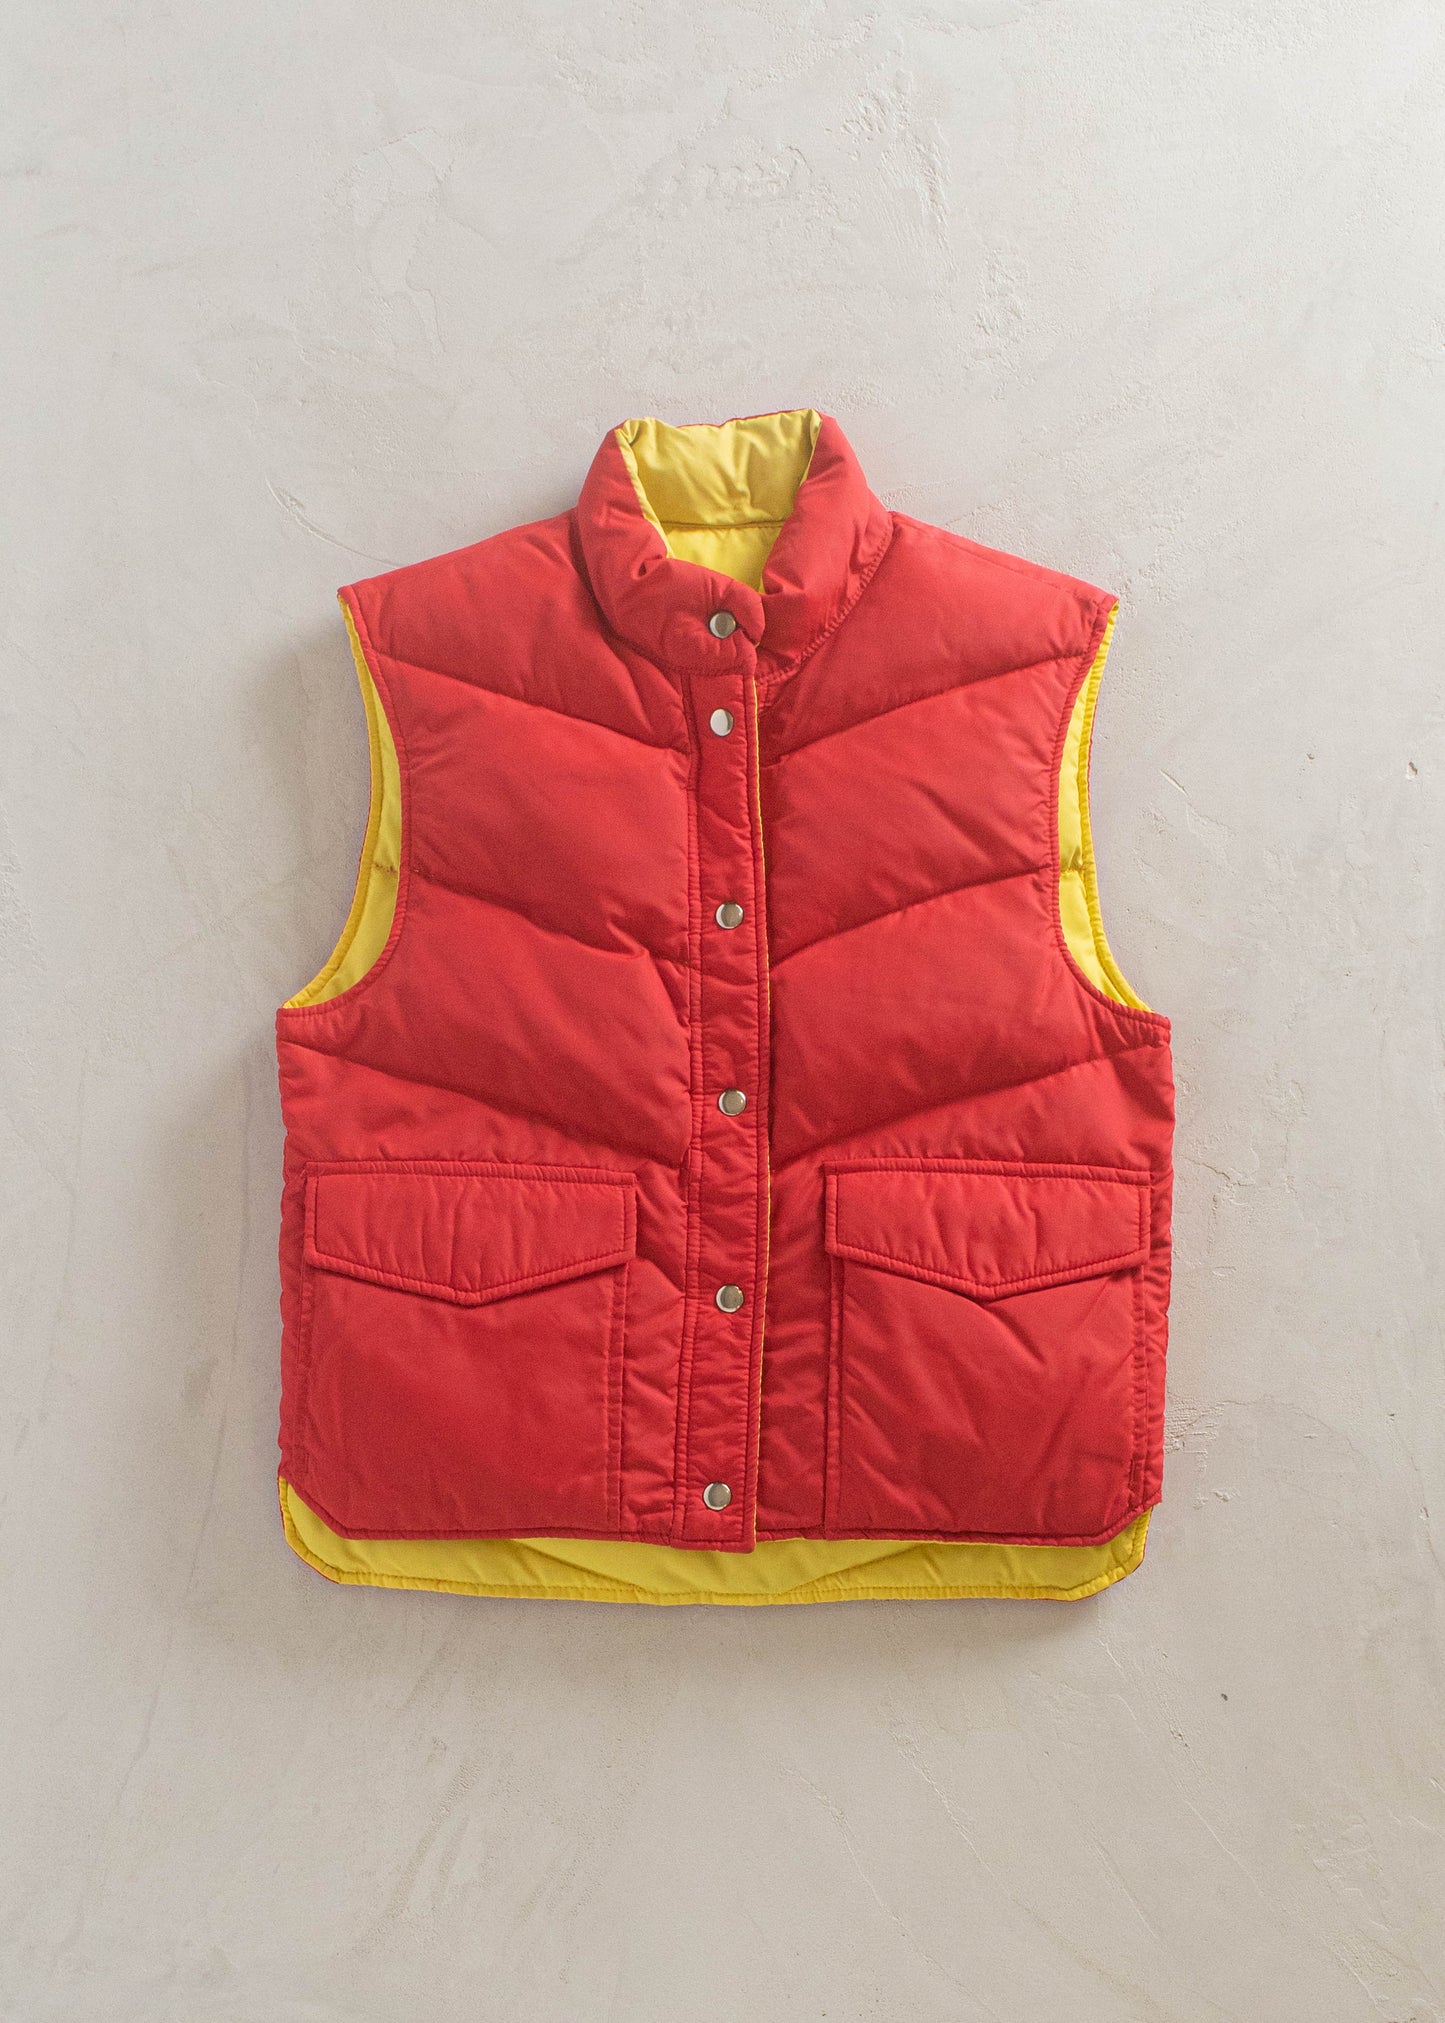 1990s Reversible Down Vest Size XS/S